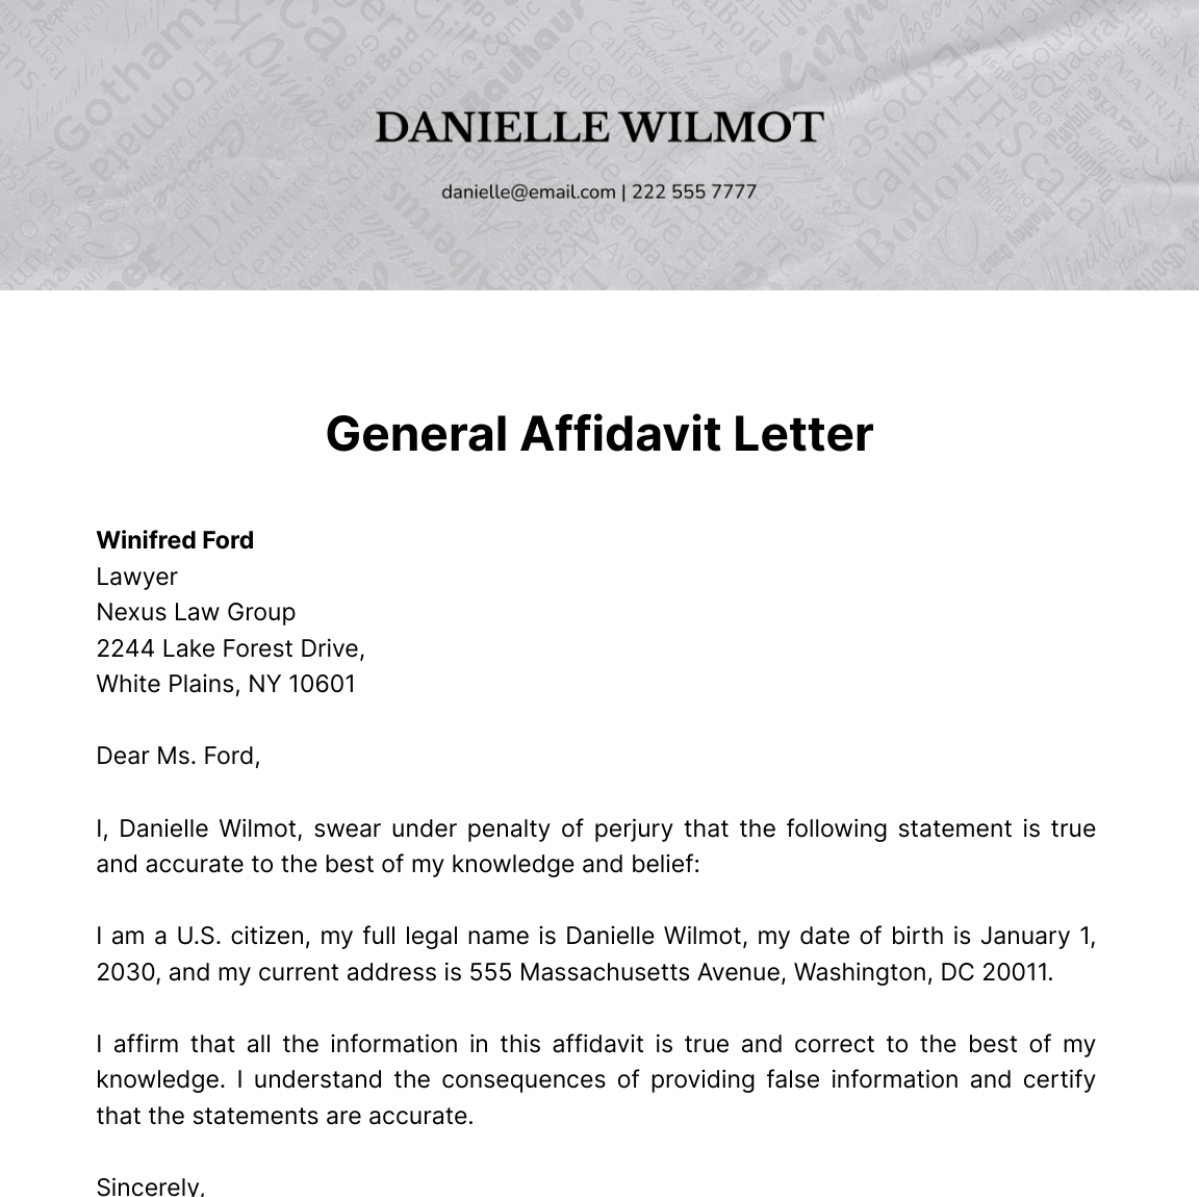 General Affidavit Letter   Template